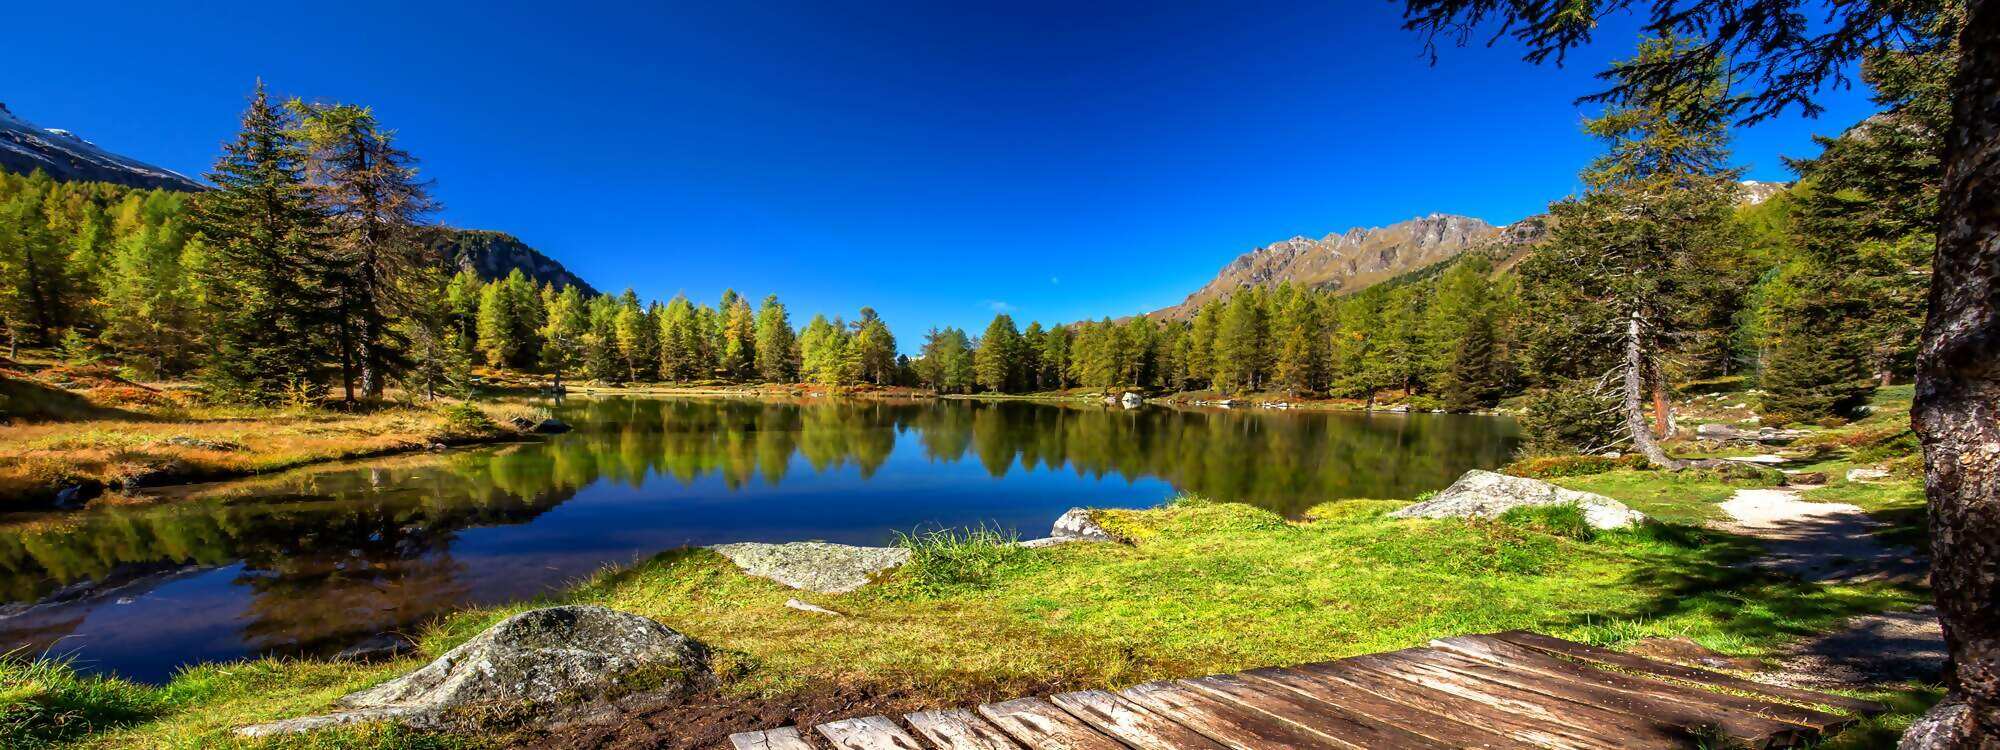 Trip El Hierro - Unterkunft für die Feriendestination Tirol suchen, die besten Angebote vergleichen & reservieren! Viel Spaß beim Urlaub buchen!